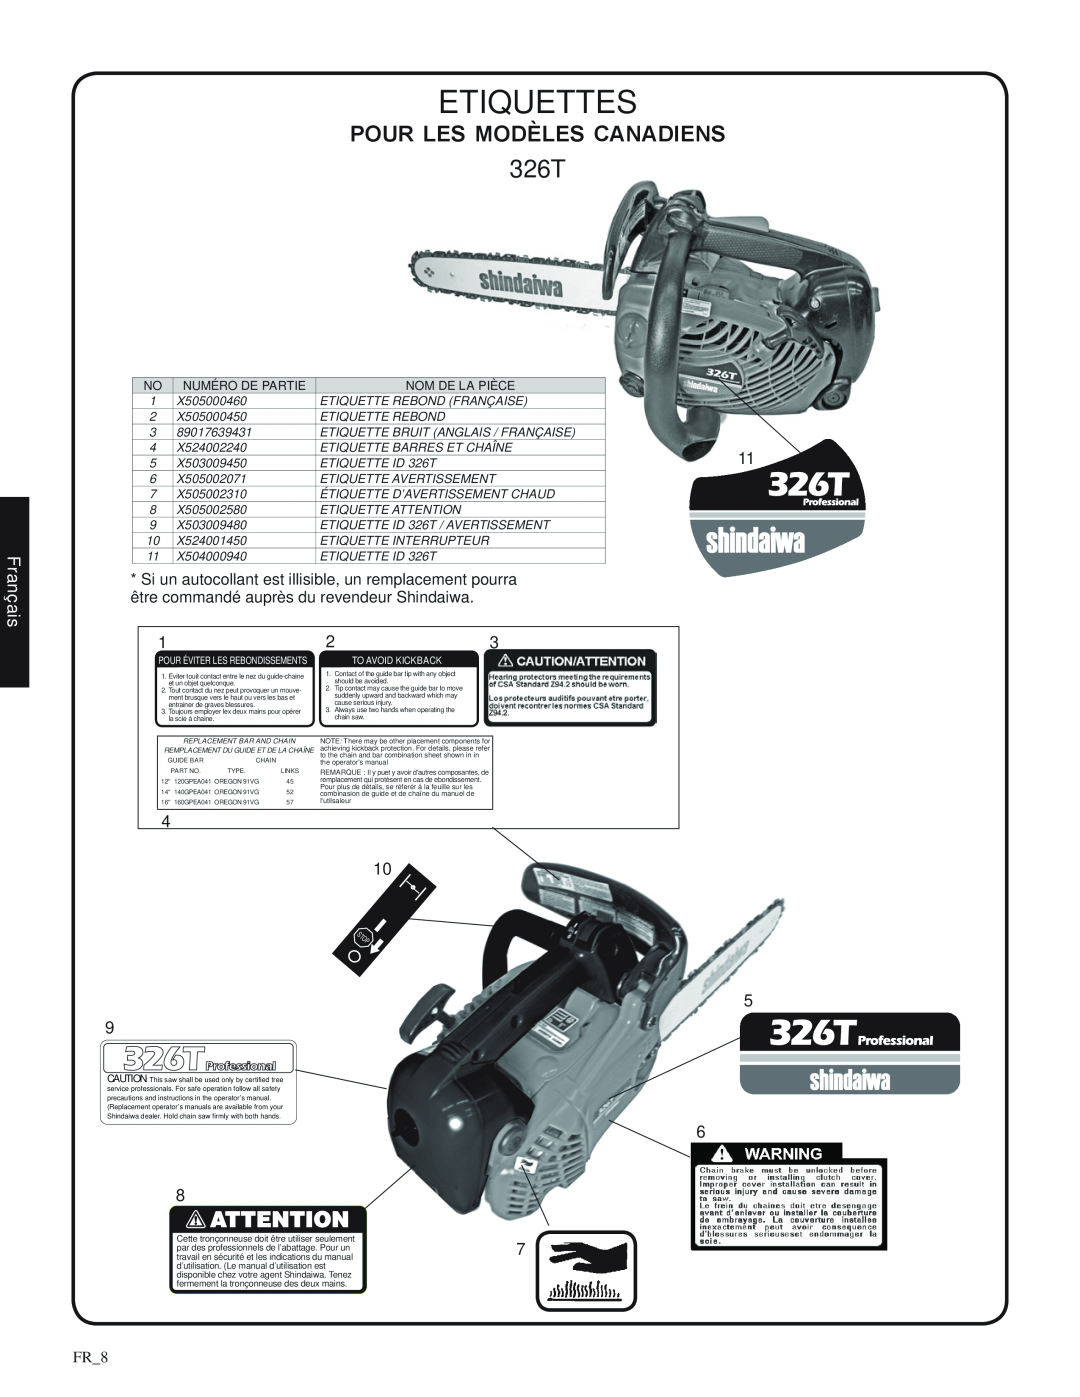 Shindaiwa 82085 manual Etiquettes, pour les modèles canadiens, 326T, Français, FR_8, Numéro de partie, Nom De La Pièce 